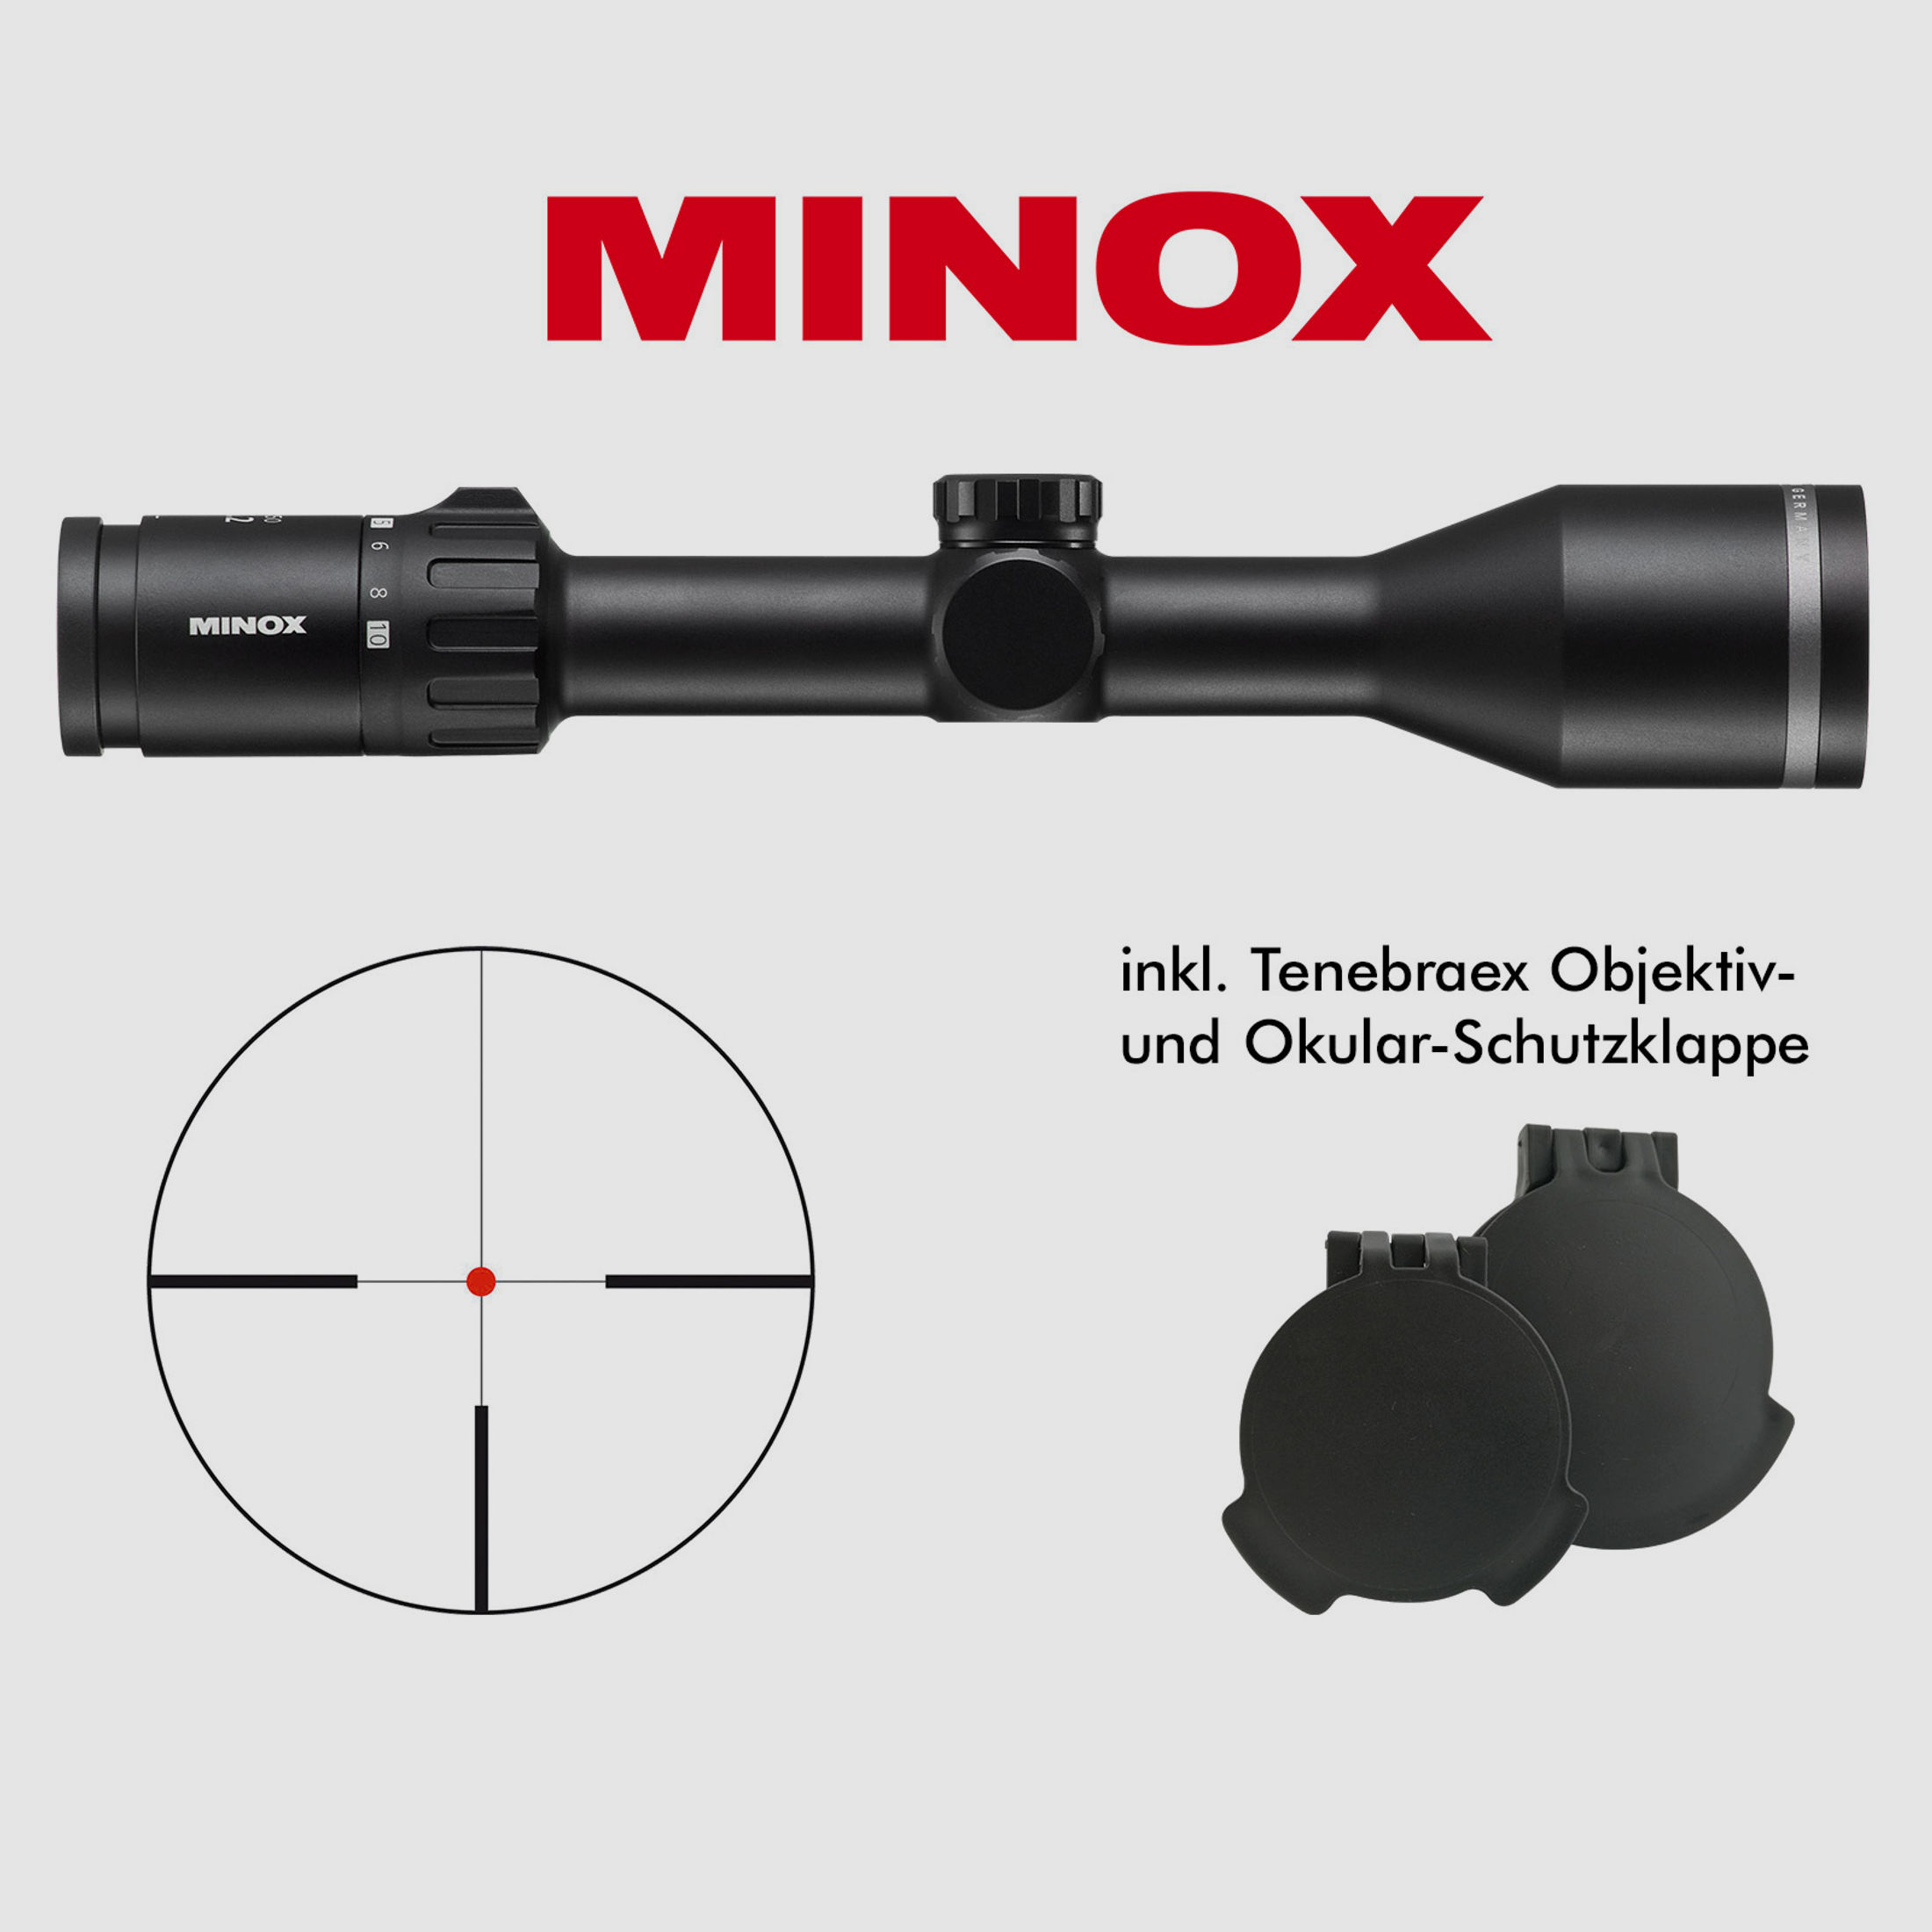 Minox 2-10x50, ohne Schiene